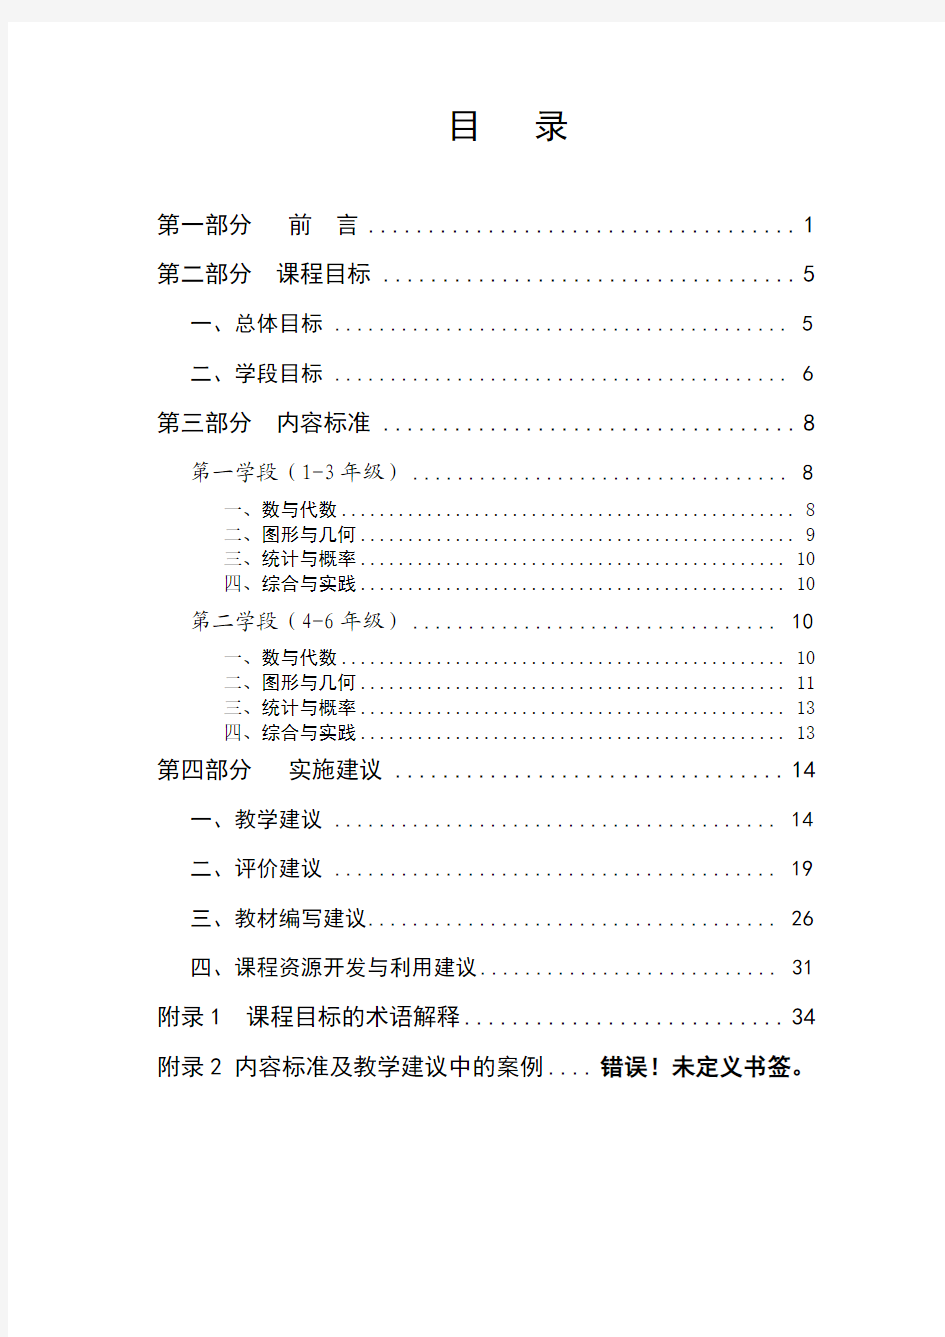 2011版小学数学课程标准修订稿(最新)